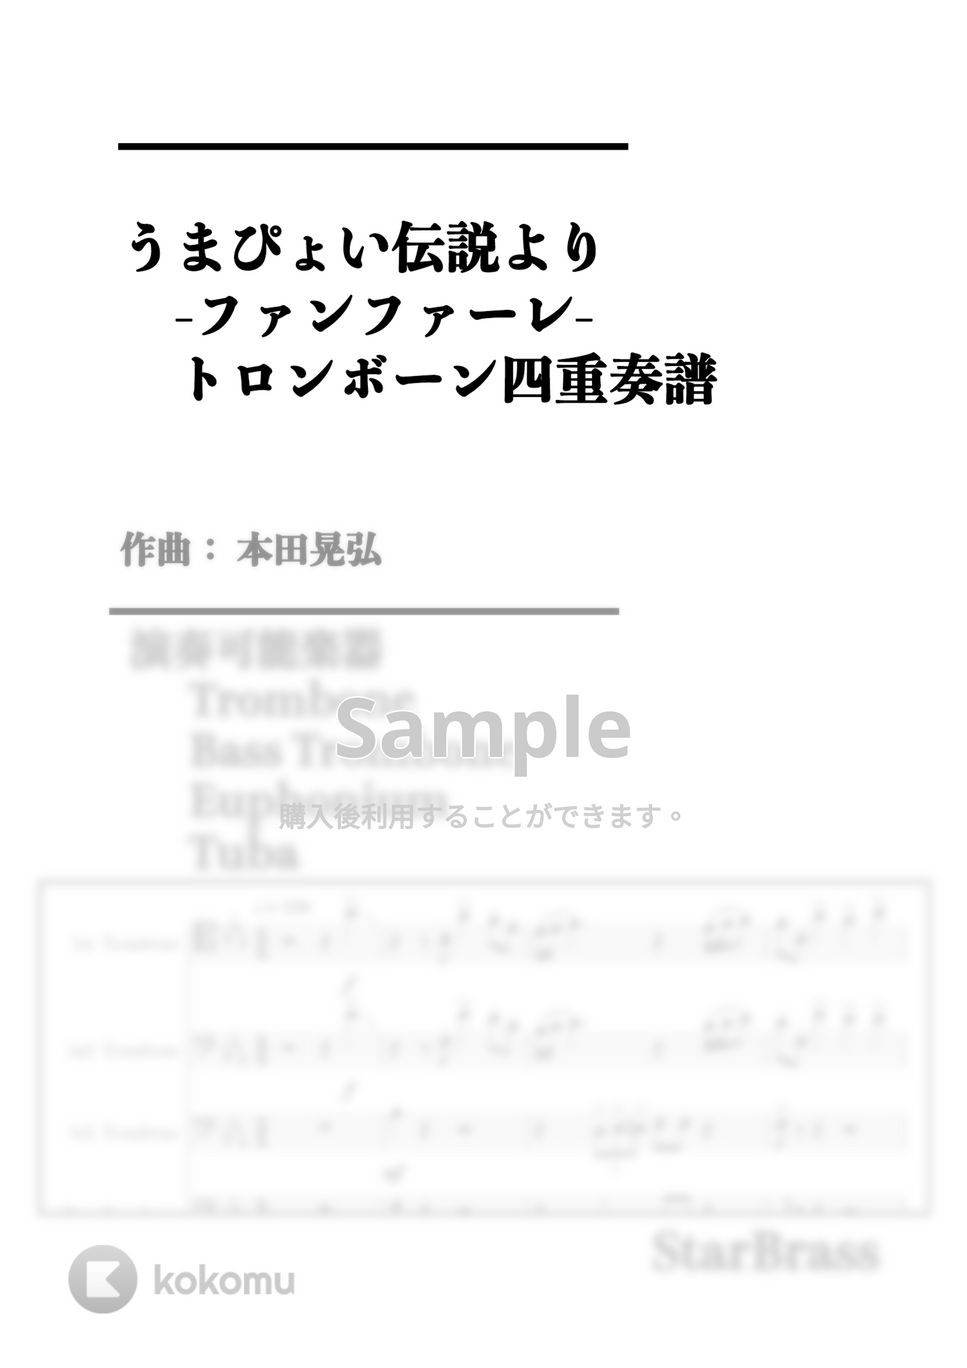 本田 晃弘 - うまぴょい伝説 より ファンファーレ (-Trombone 四重奏- 原キー) by Creampuff